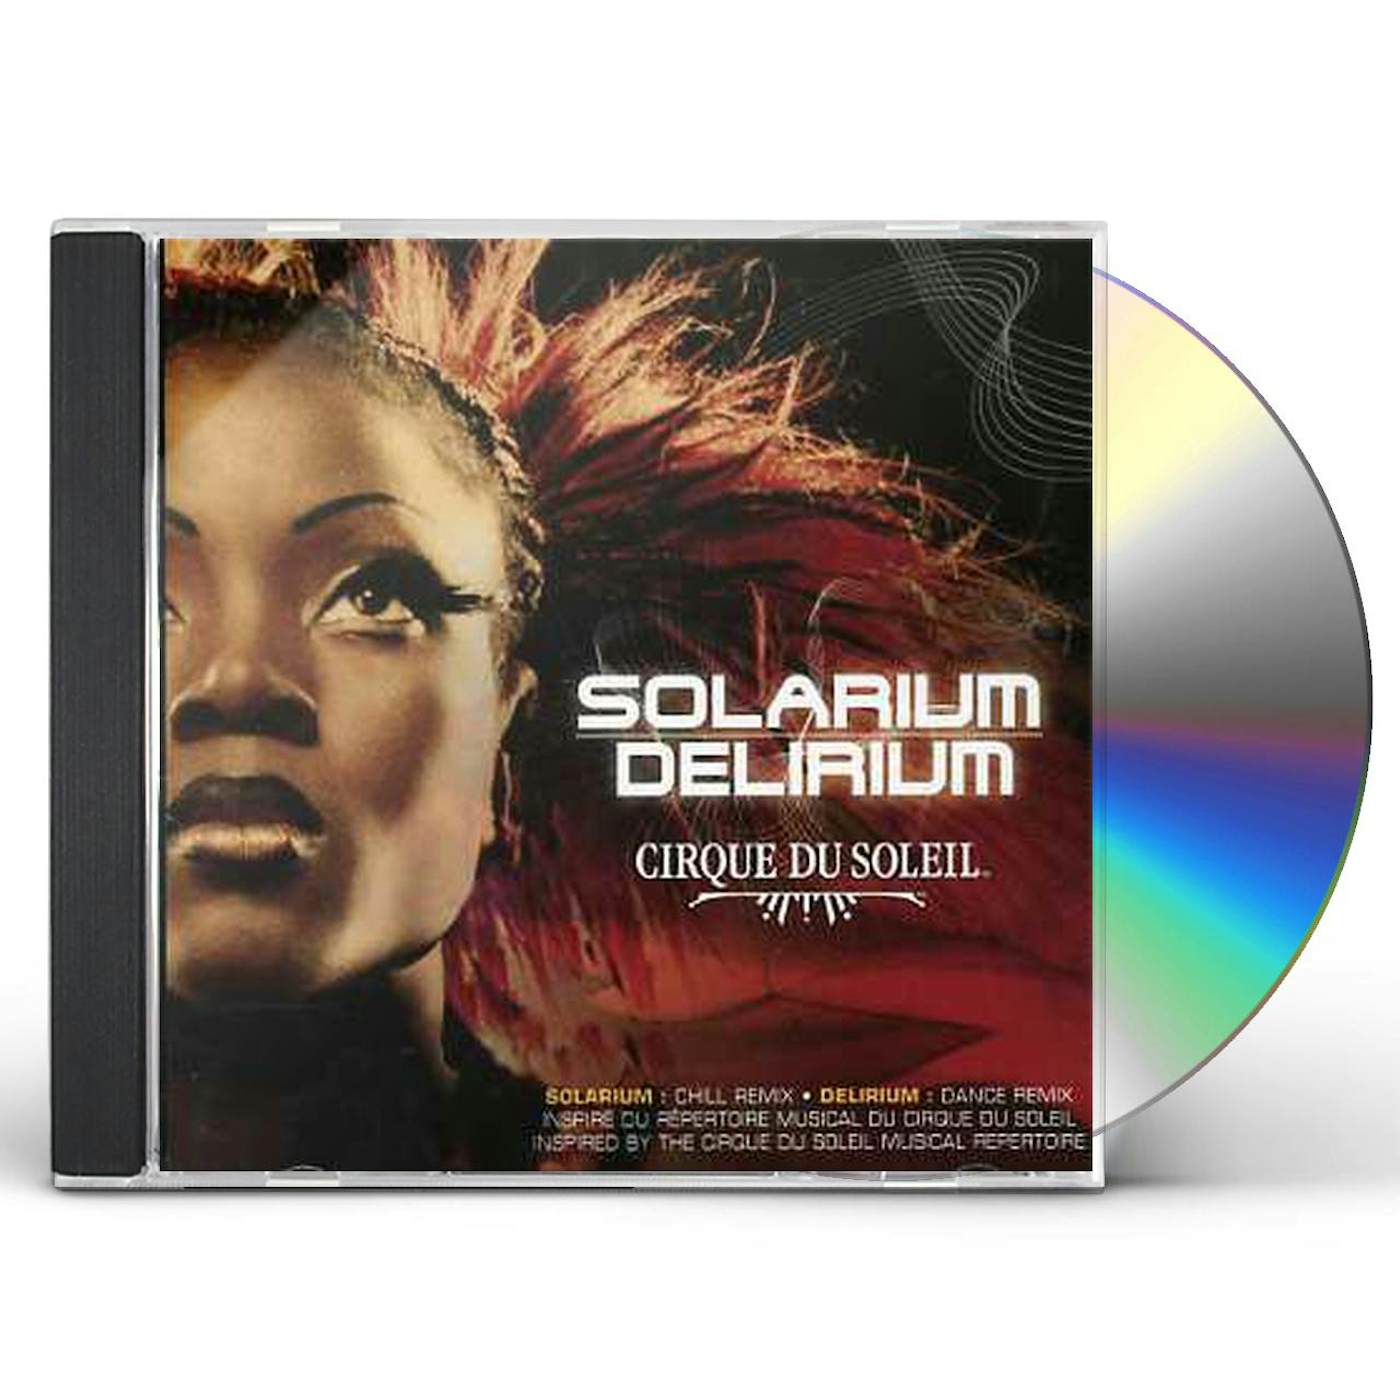 LE BEST OF CIRQUE DU SOLEIL CD